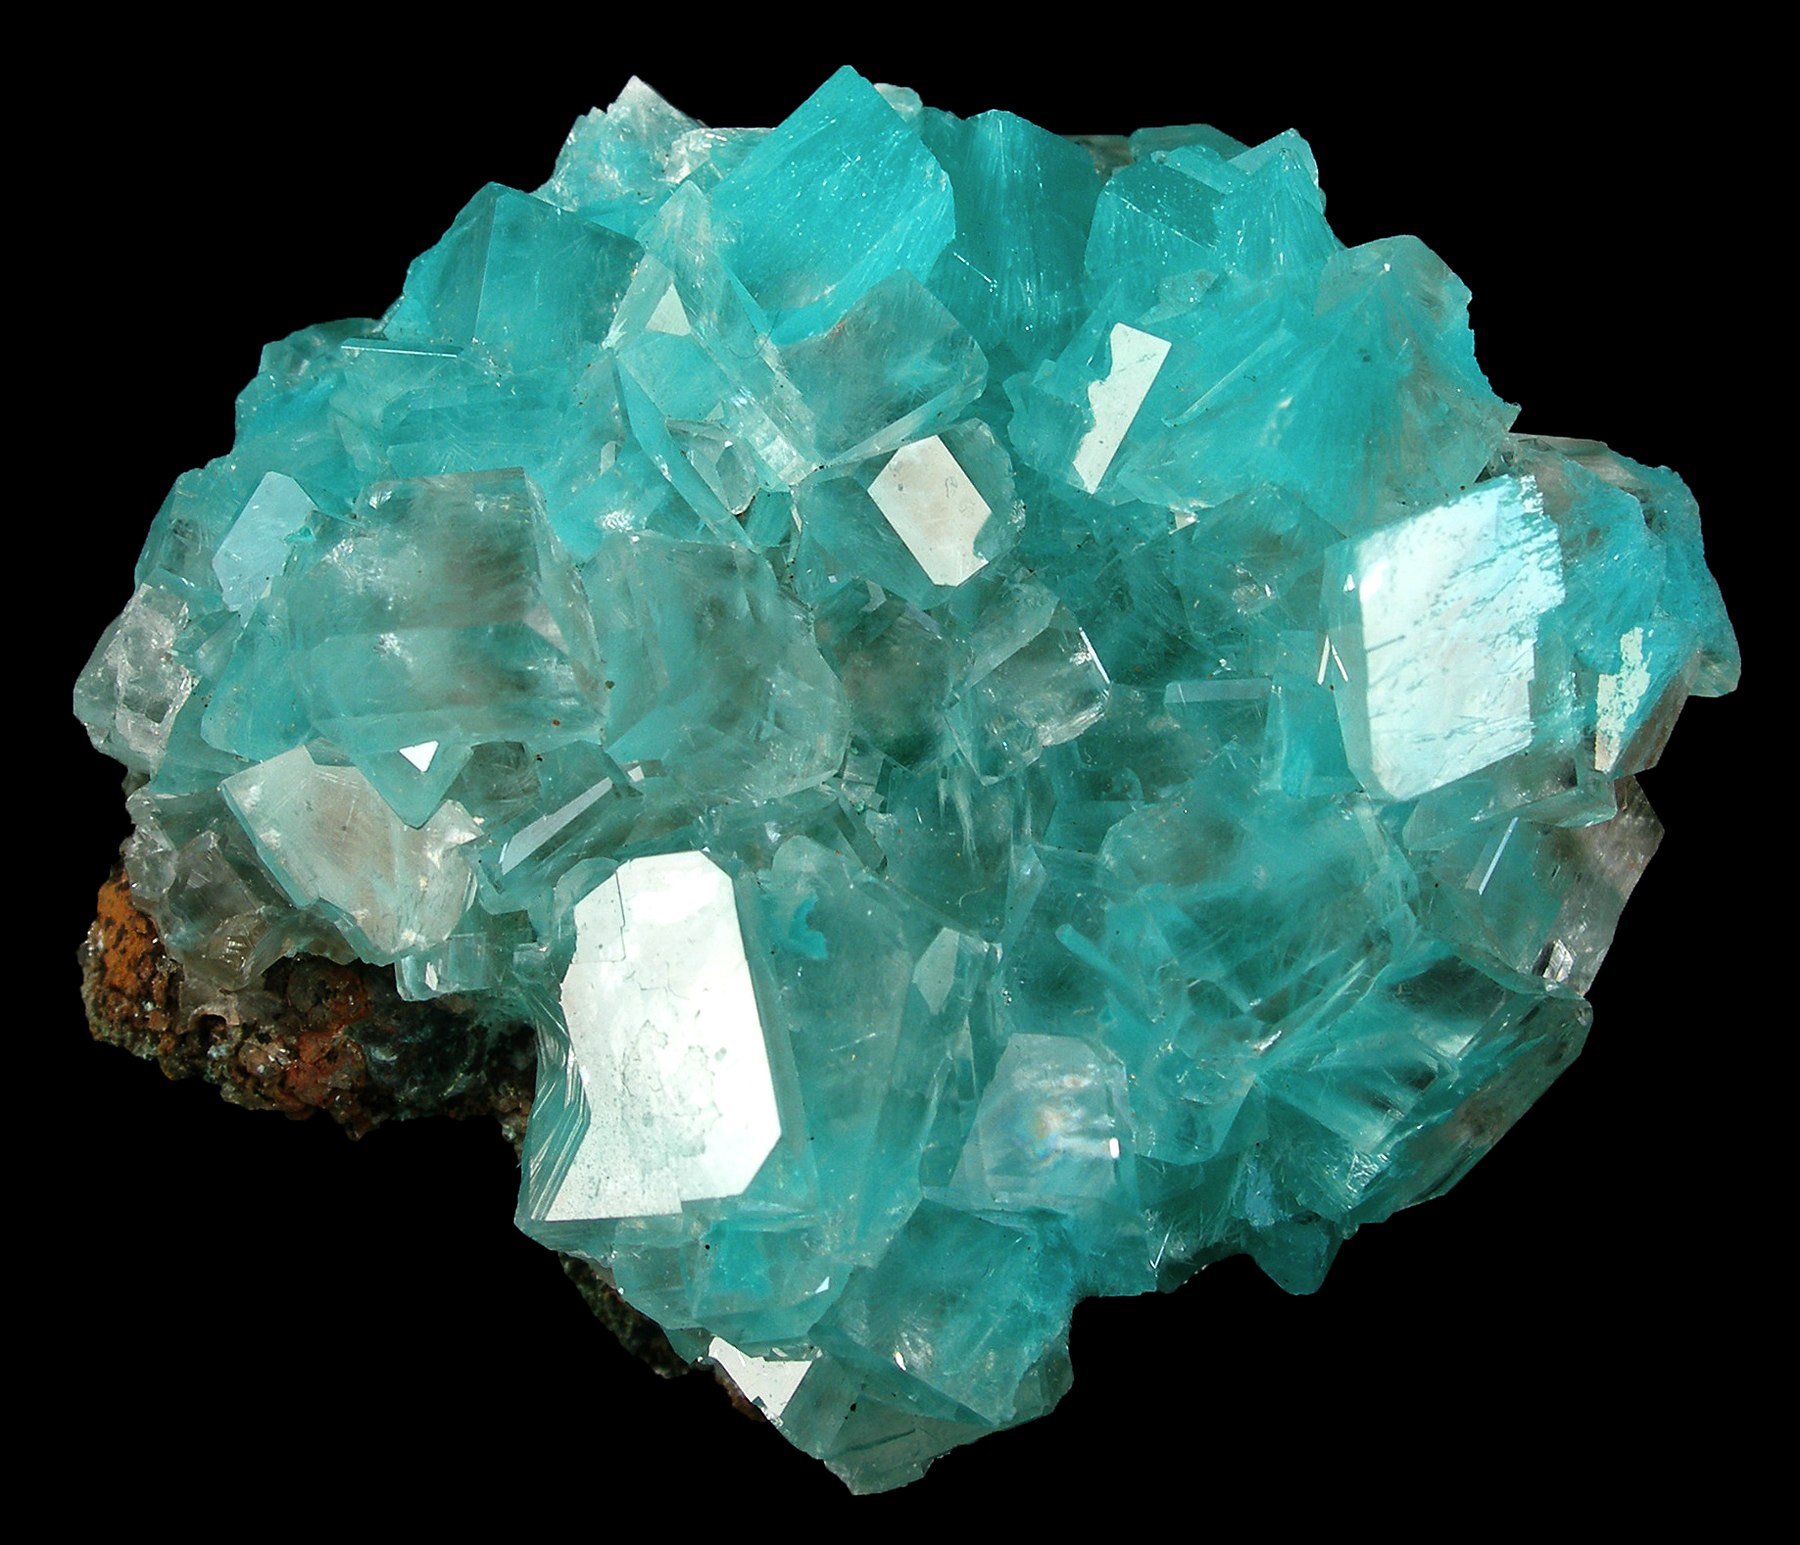 File:Aurichalcite-Calcite-aur12a.jpg - Wikimedia Commons